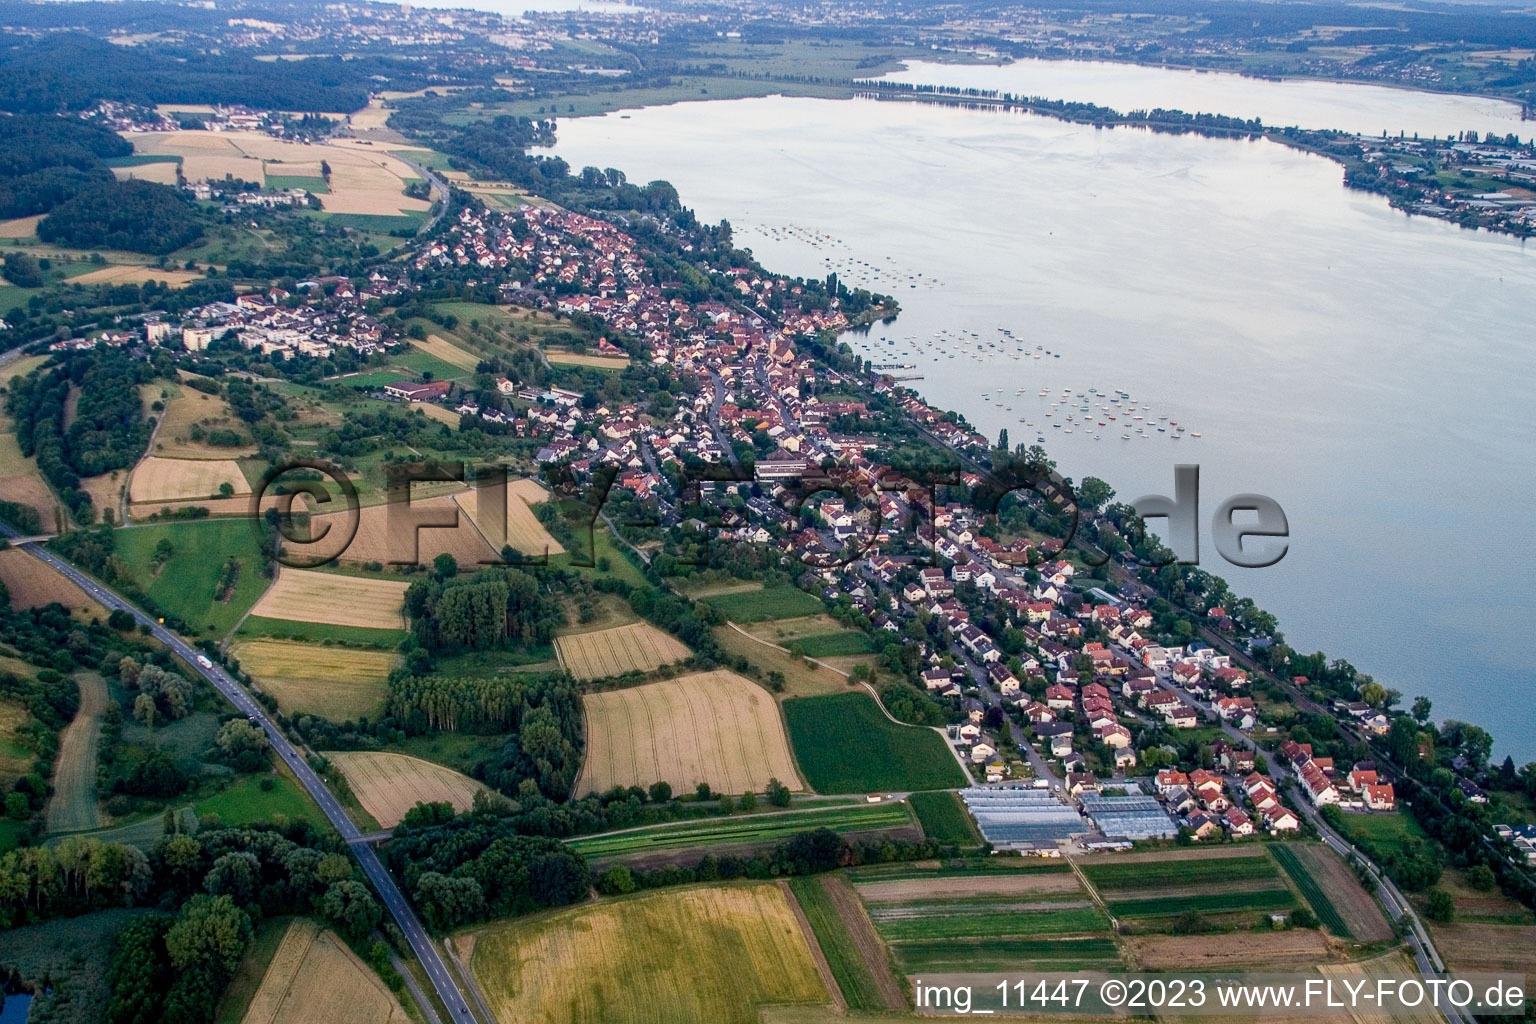 Luftbild von Dorfkern an den See- Uferbereichen des Untersee/Bodensee in Allensbach im Bundesland Baden-Württemberg, Deutschland